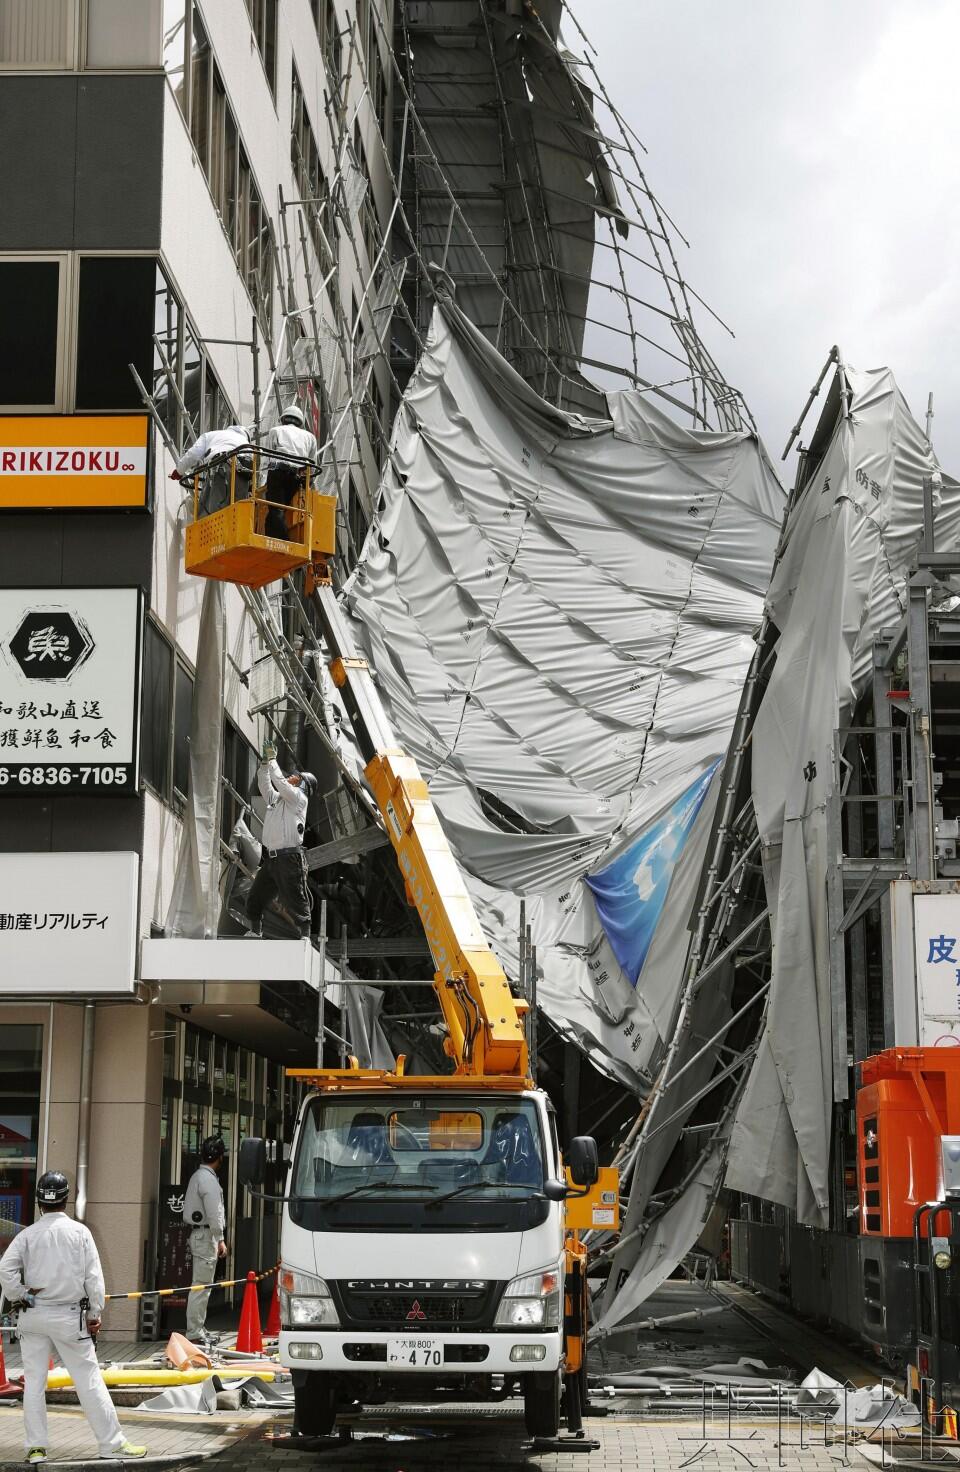 第12号强台风“云雀”逆行登陆西日本 致24人受伤